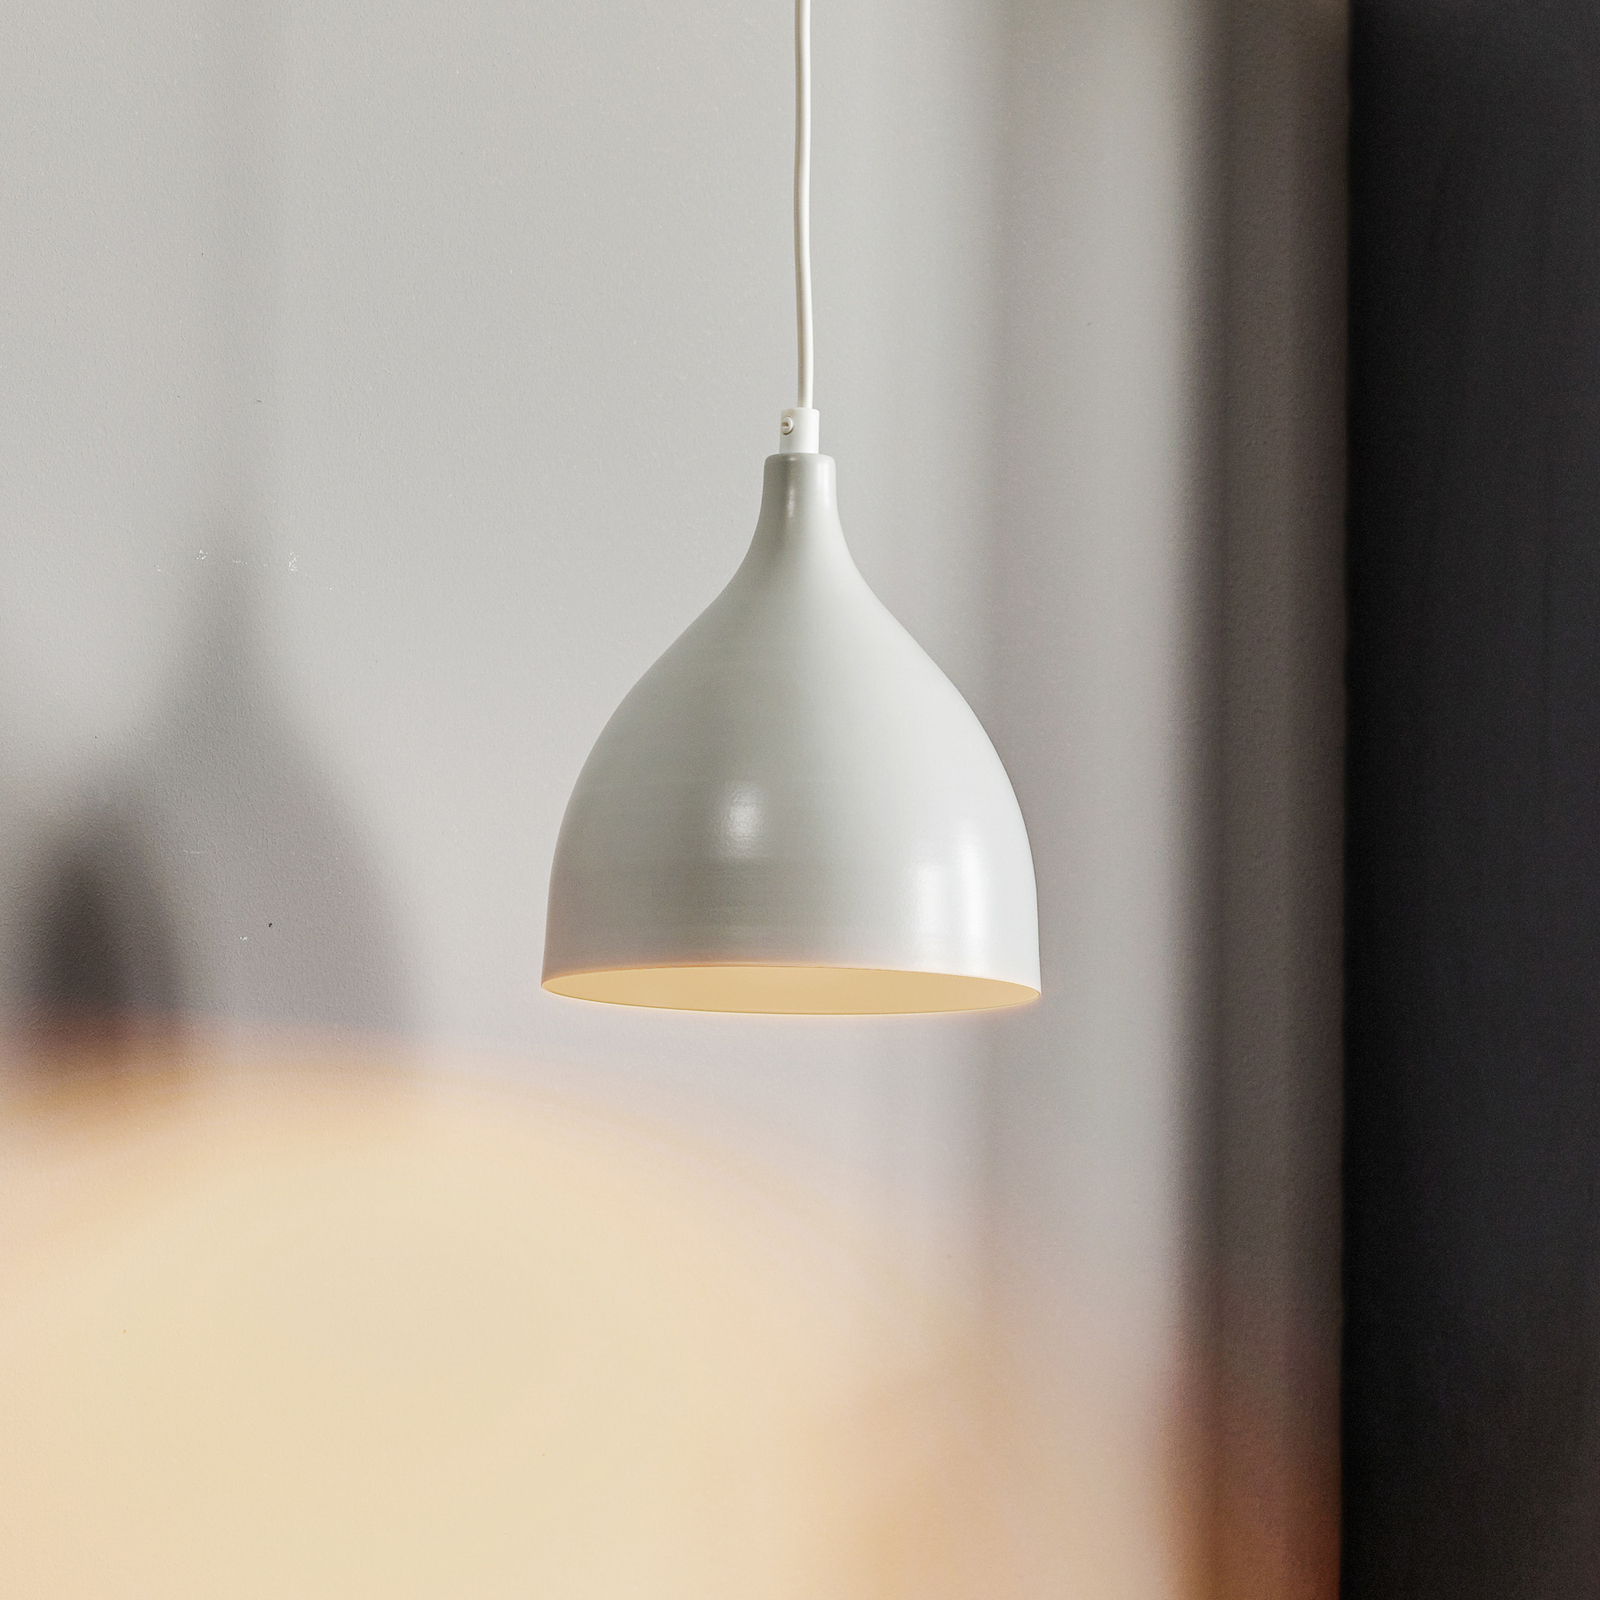 Nanu hanging lamp made of metal light grey 1-bulb